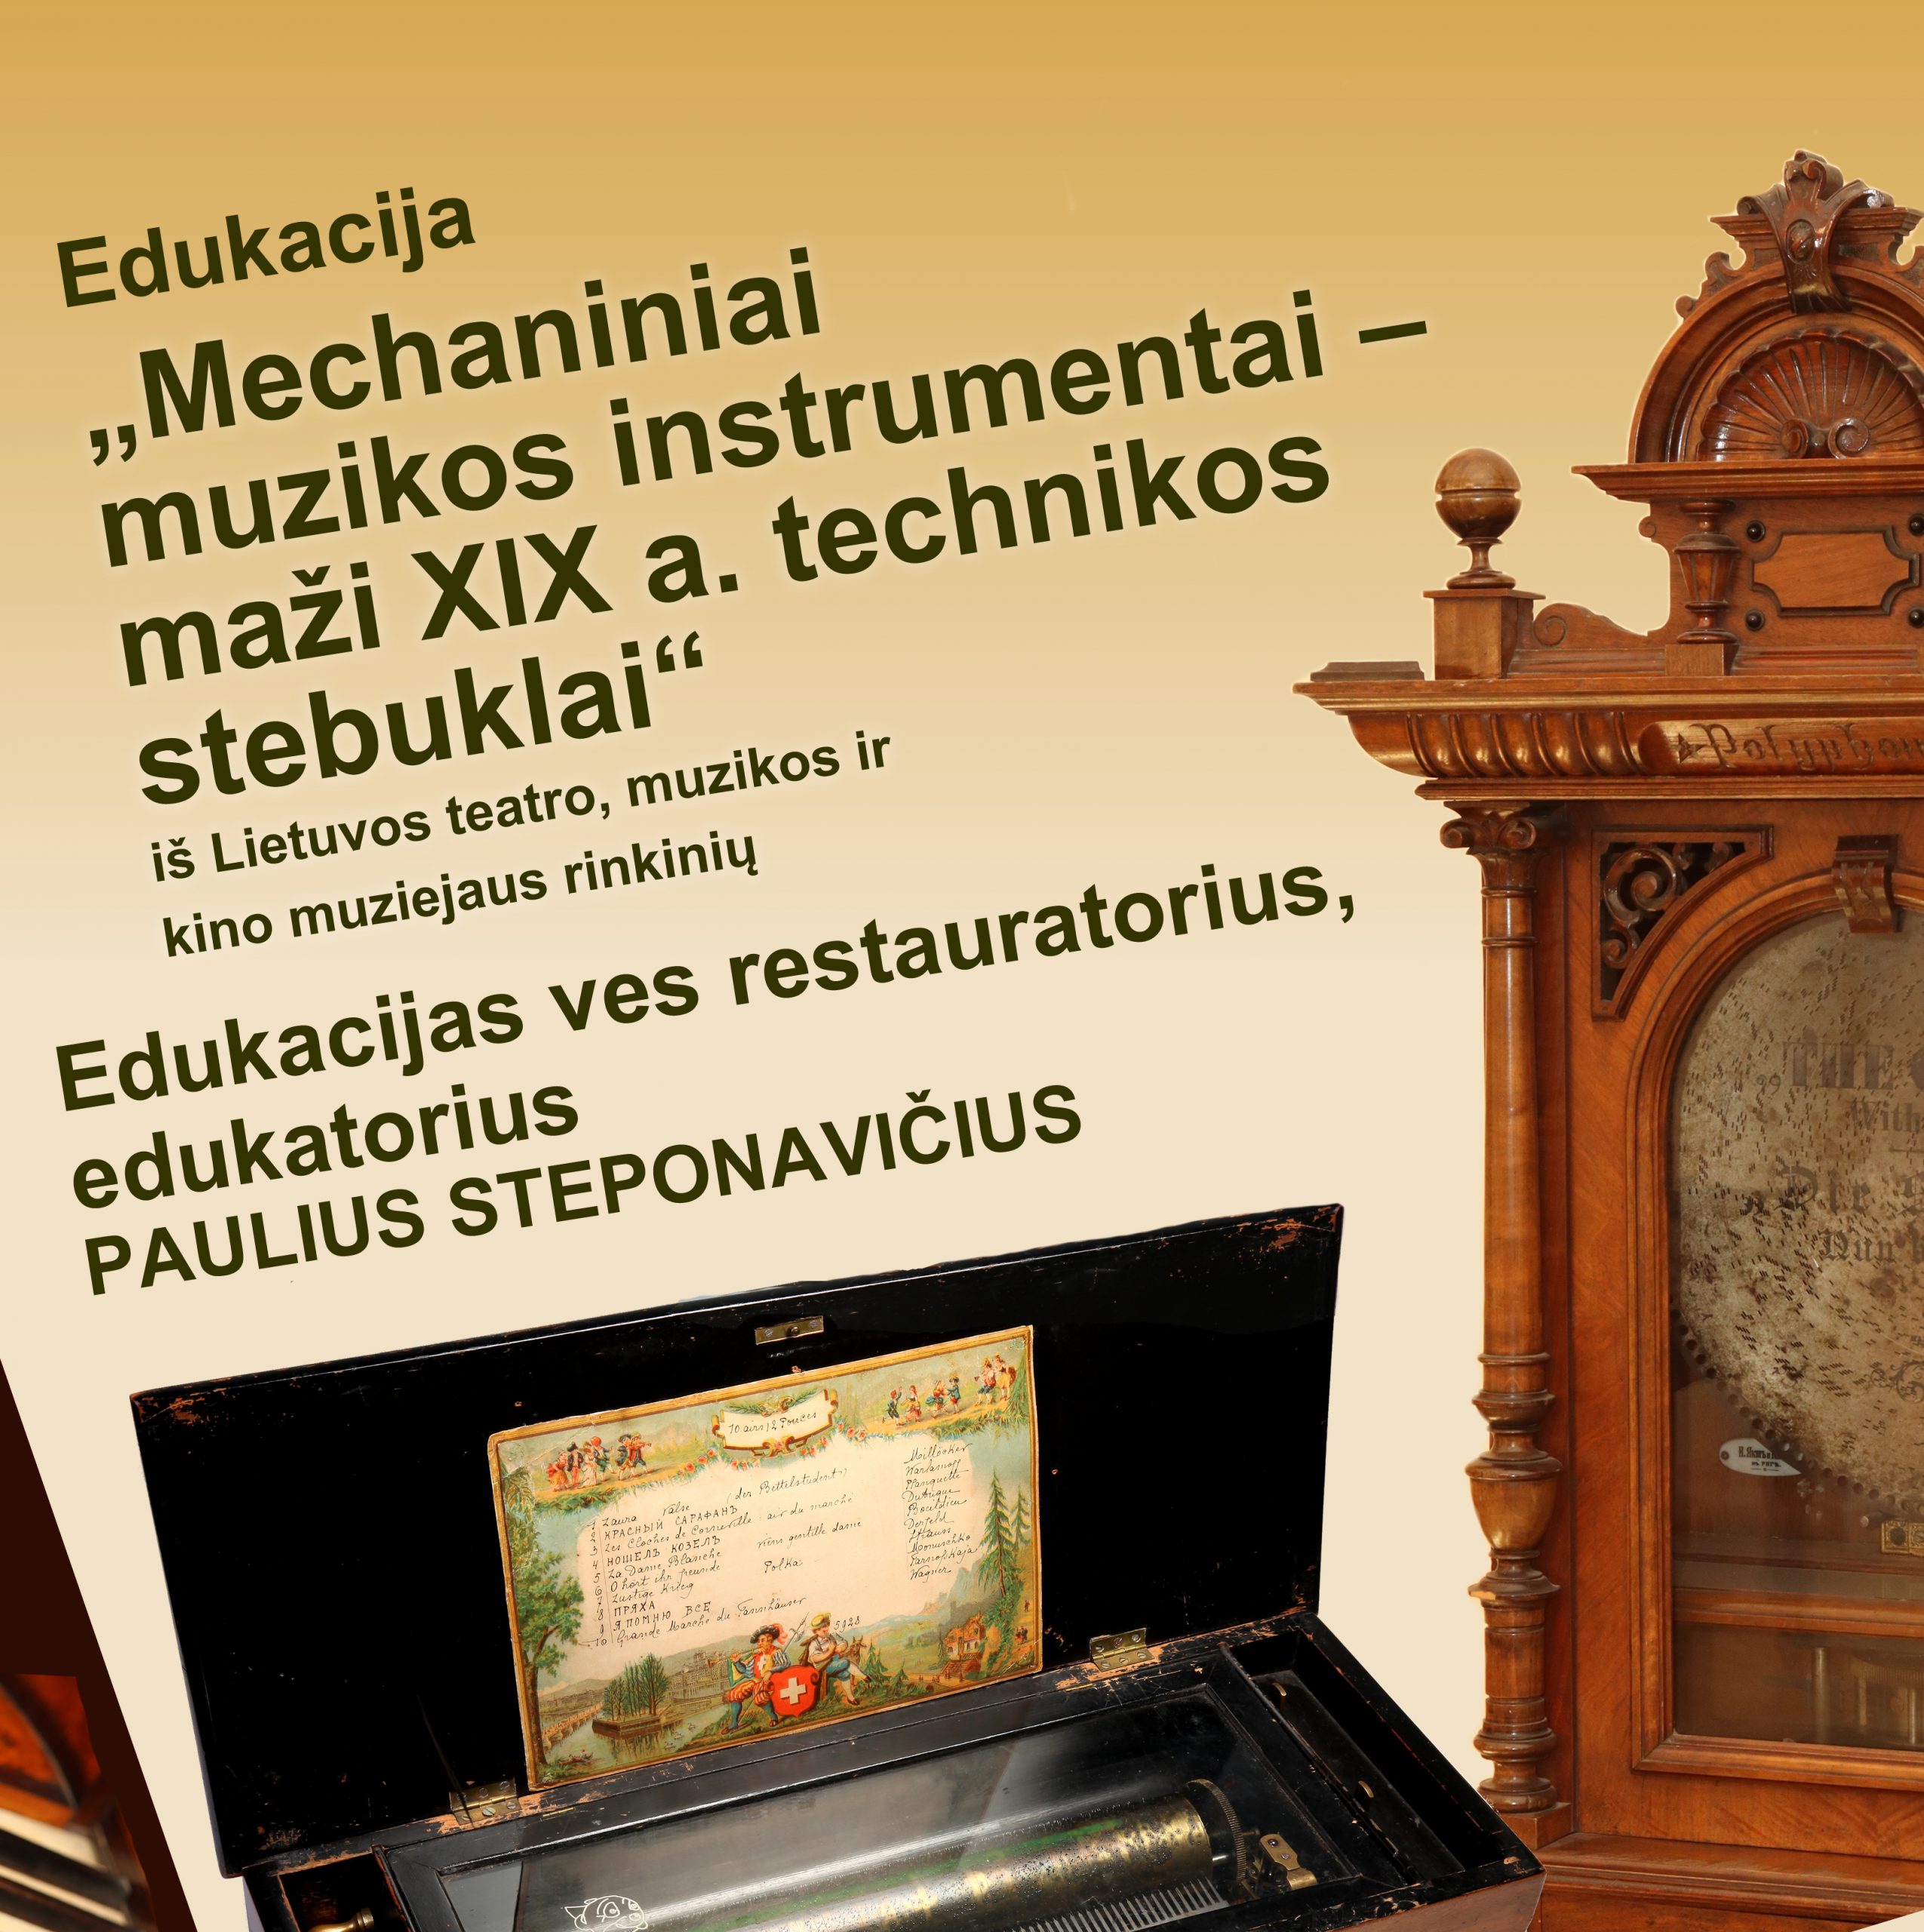 You are currently viewing Edukacijos „Mechaniniai muzikos instrumentai – maži XIX a. technikos stebuklai“ Jašiūnų dvare